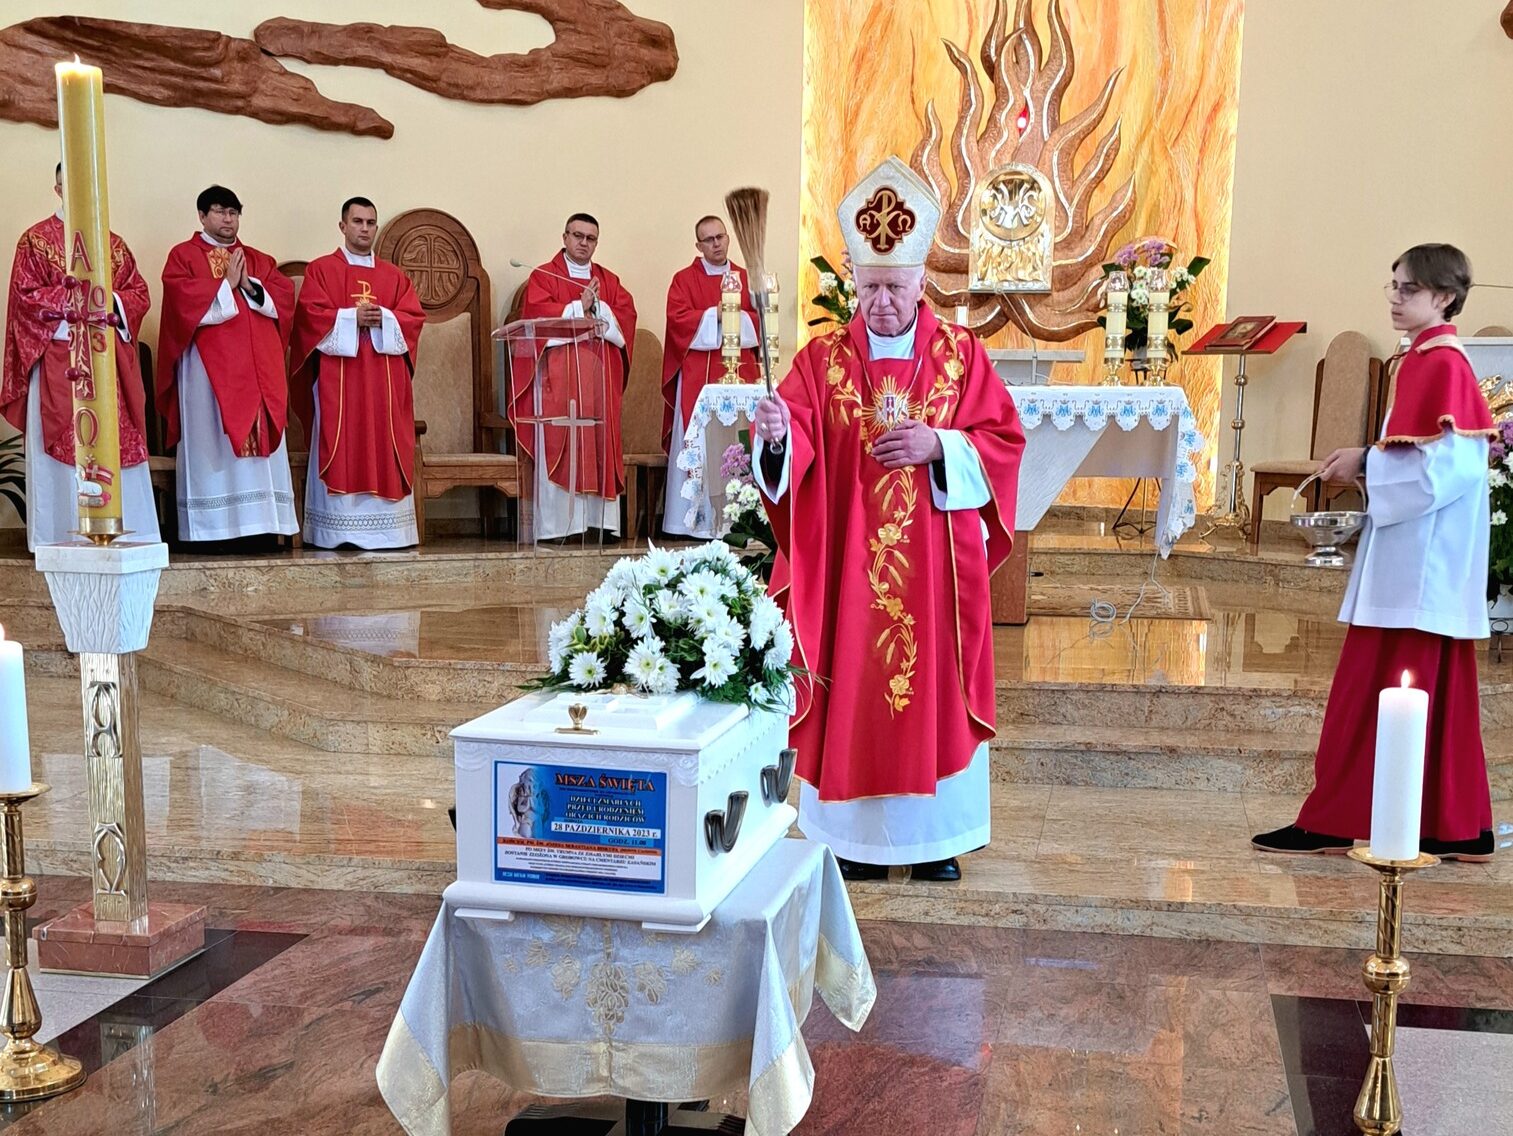 biskup kropi trumnę wodą święconą